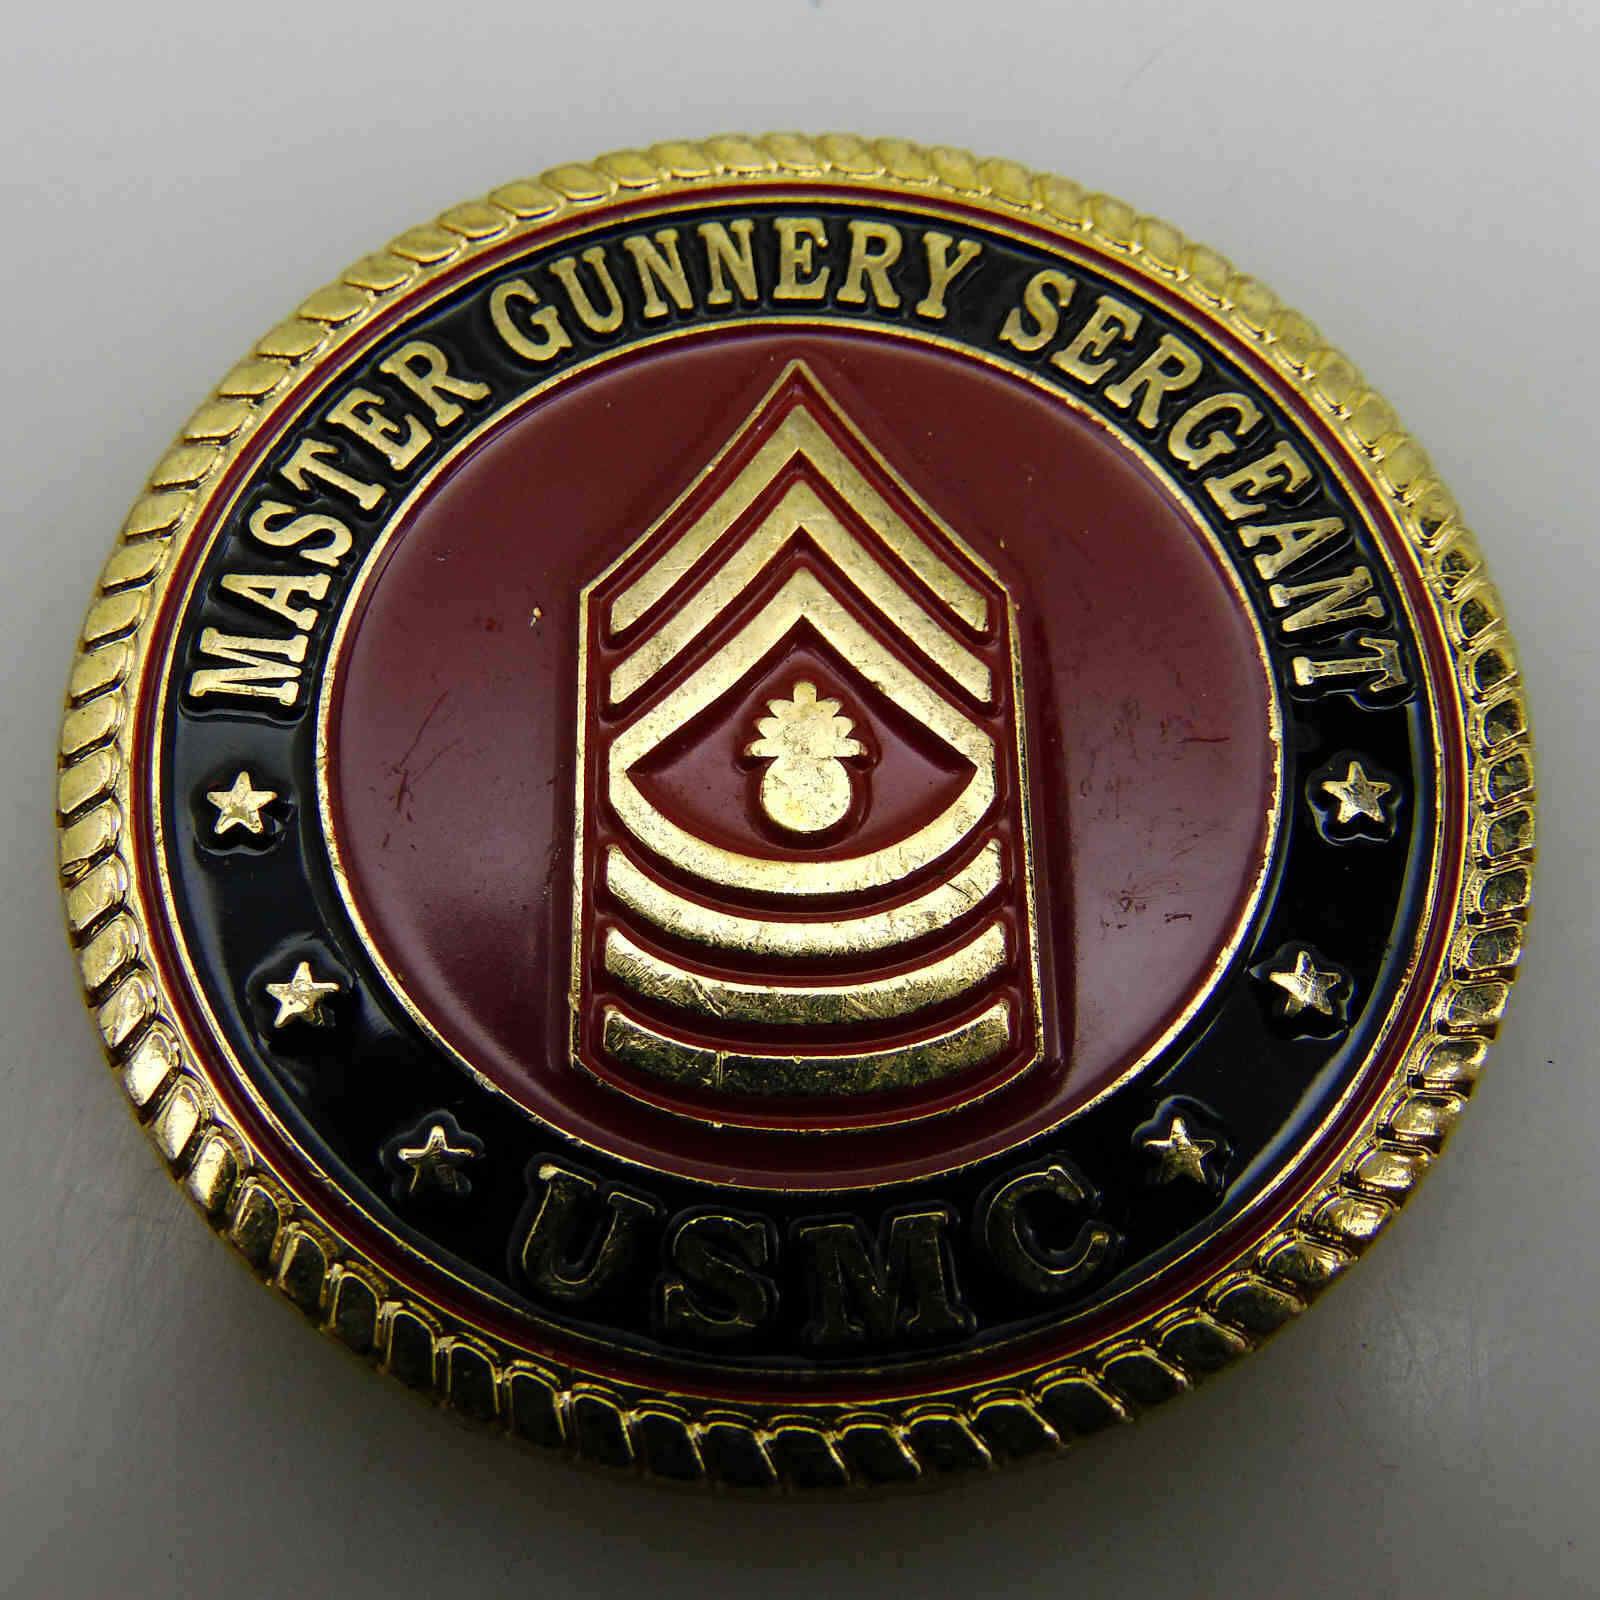 USMC MASTER GUNNERY SERGEANT CHALLENGE COIN